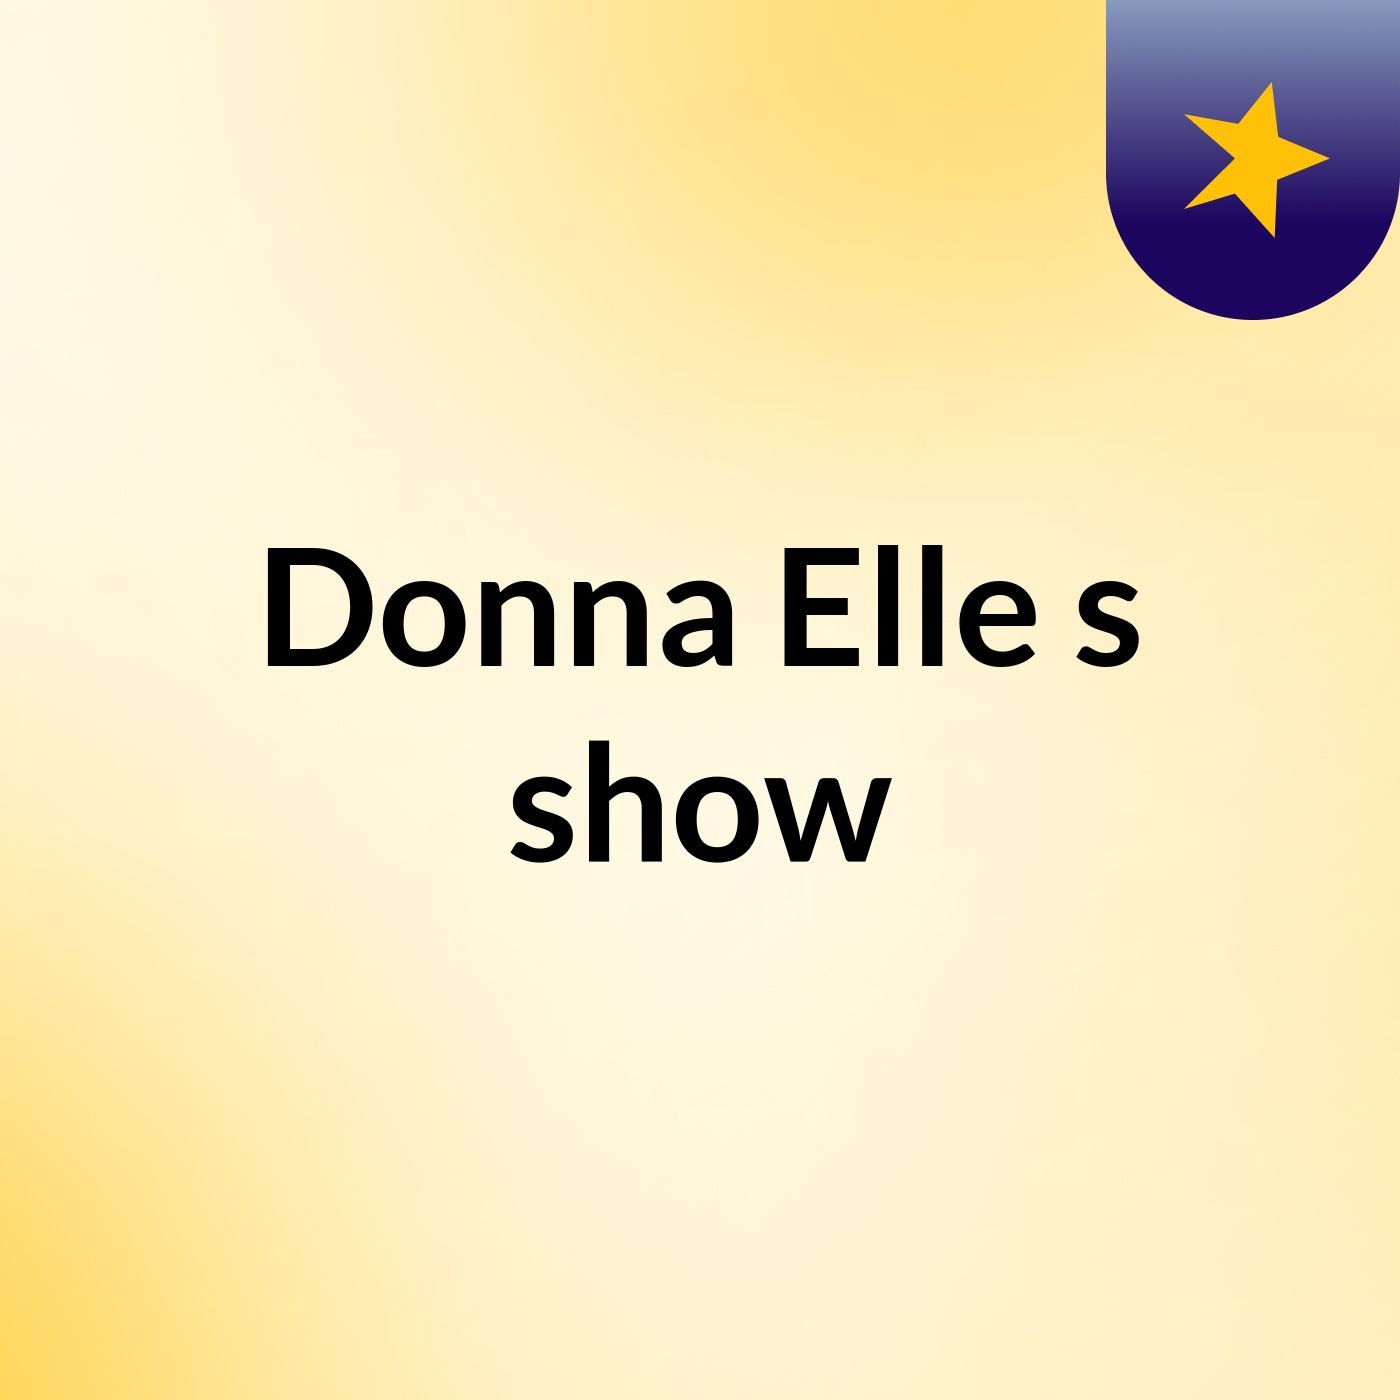 Donna Elle's show